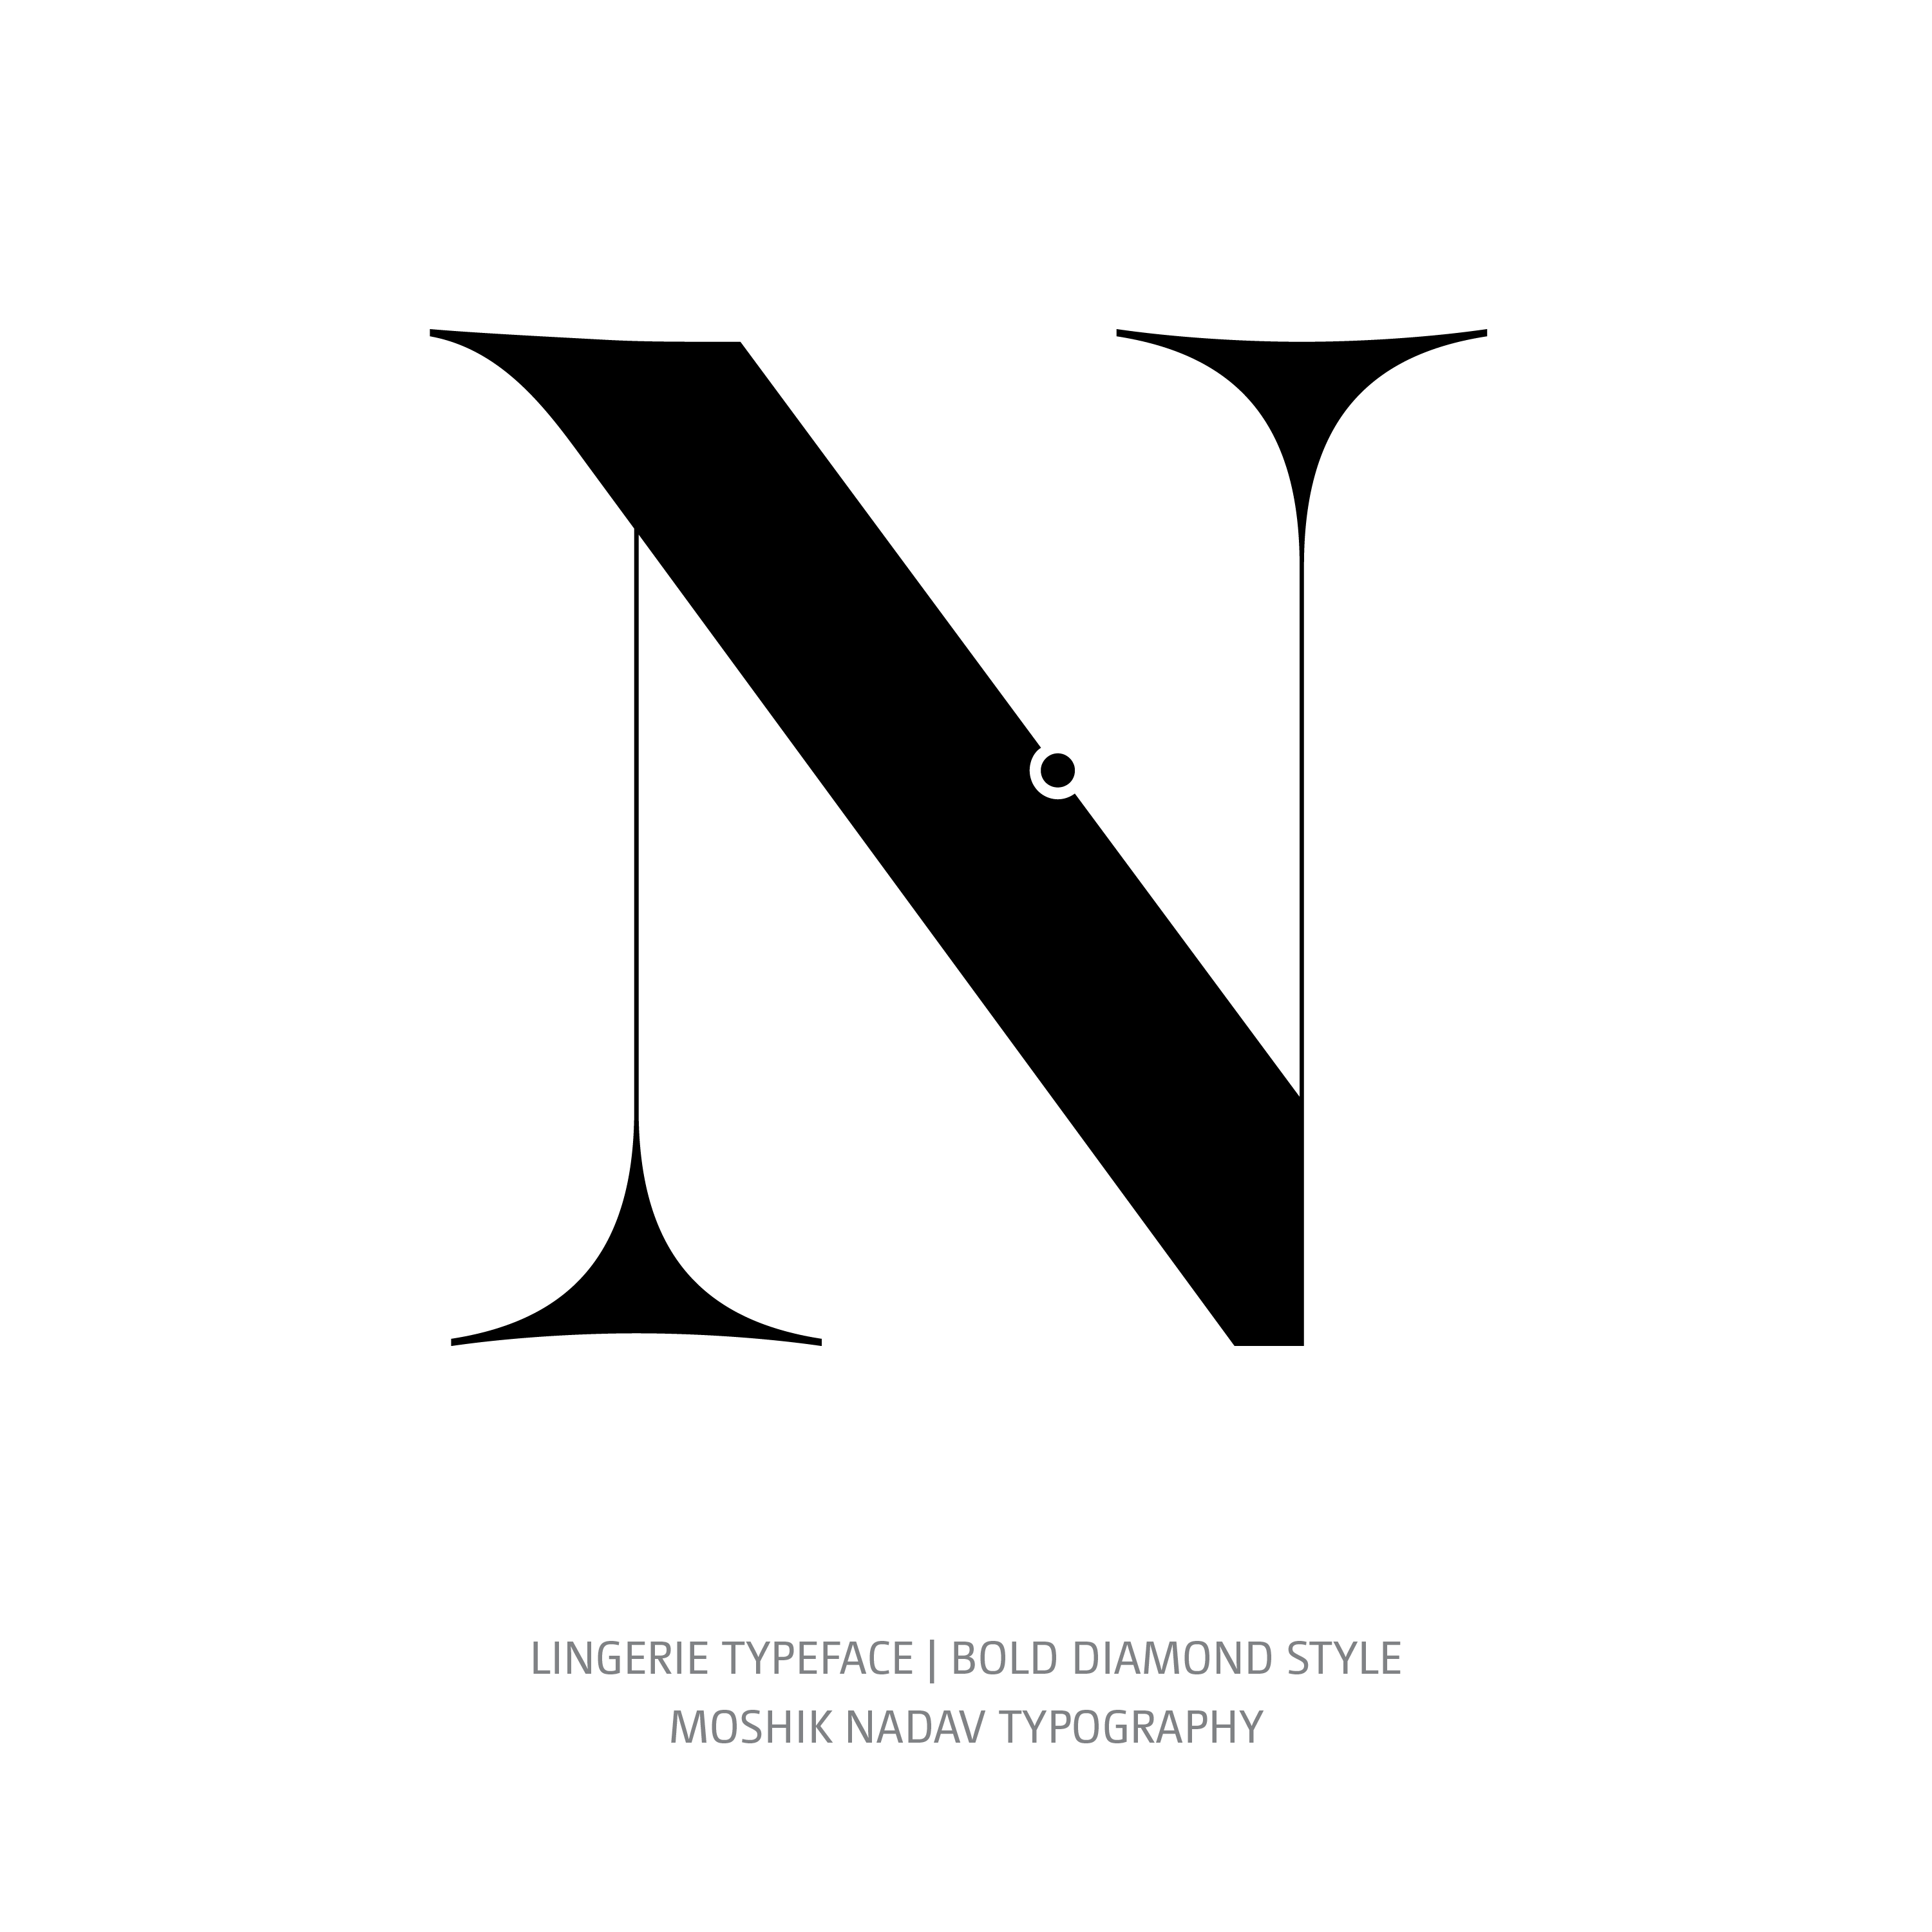 Lingerie Typeface Bold Diamond N